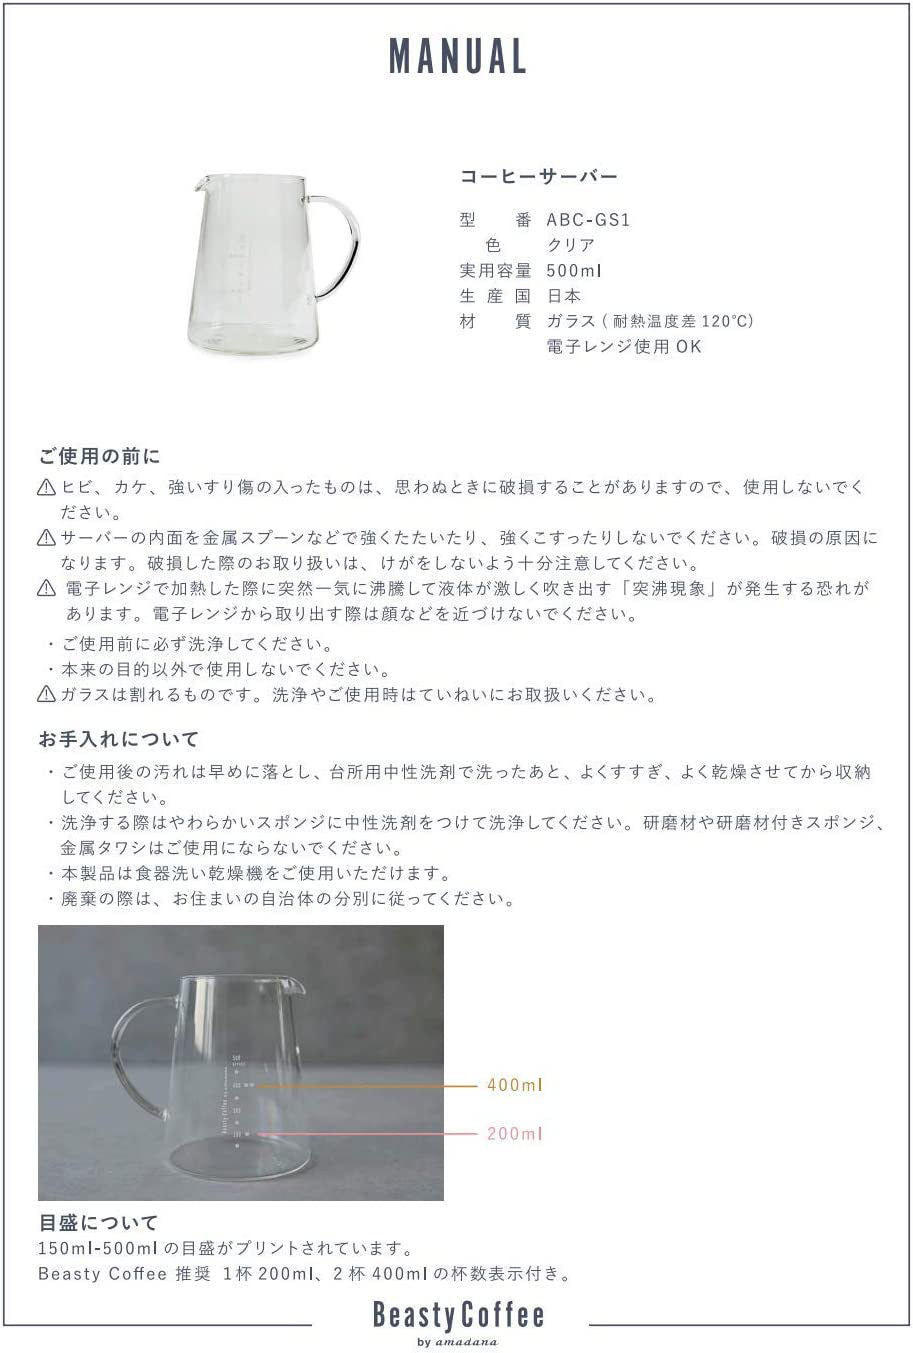 https://www.japan-best.net/cdn/shop/products/Heat-Resistant-Glass-coffee-server-Japan-Best_net-16.jpg?v=1667147236&width=913